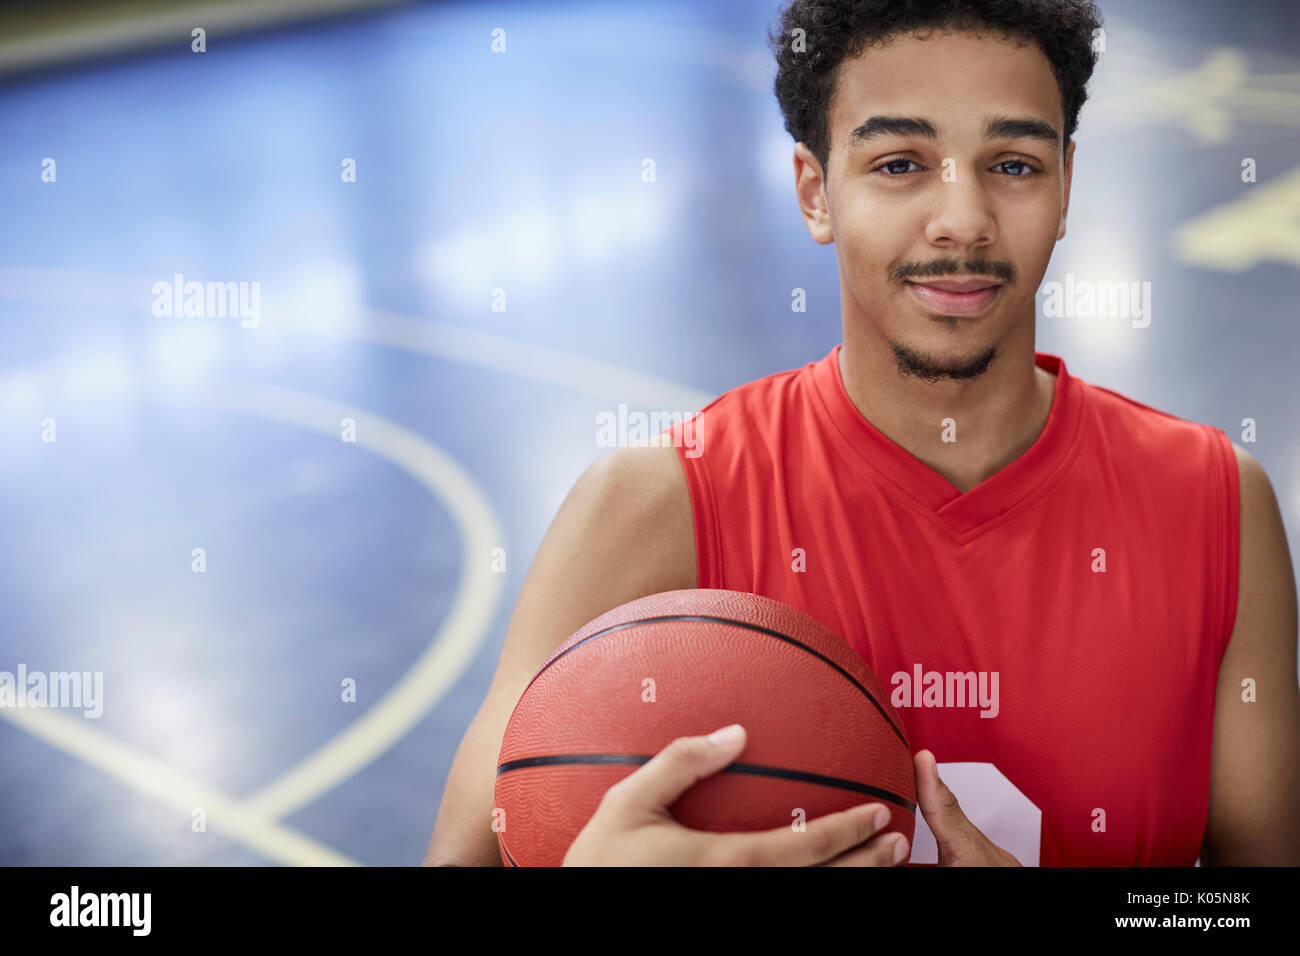 Retrato seguros macho joven jugador de baloncesto en la cancha de baloncesto de la celebración Foto de stock